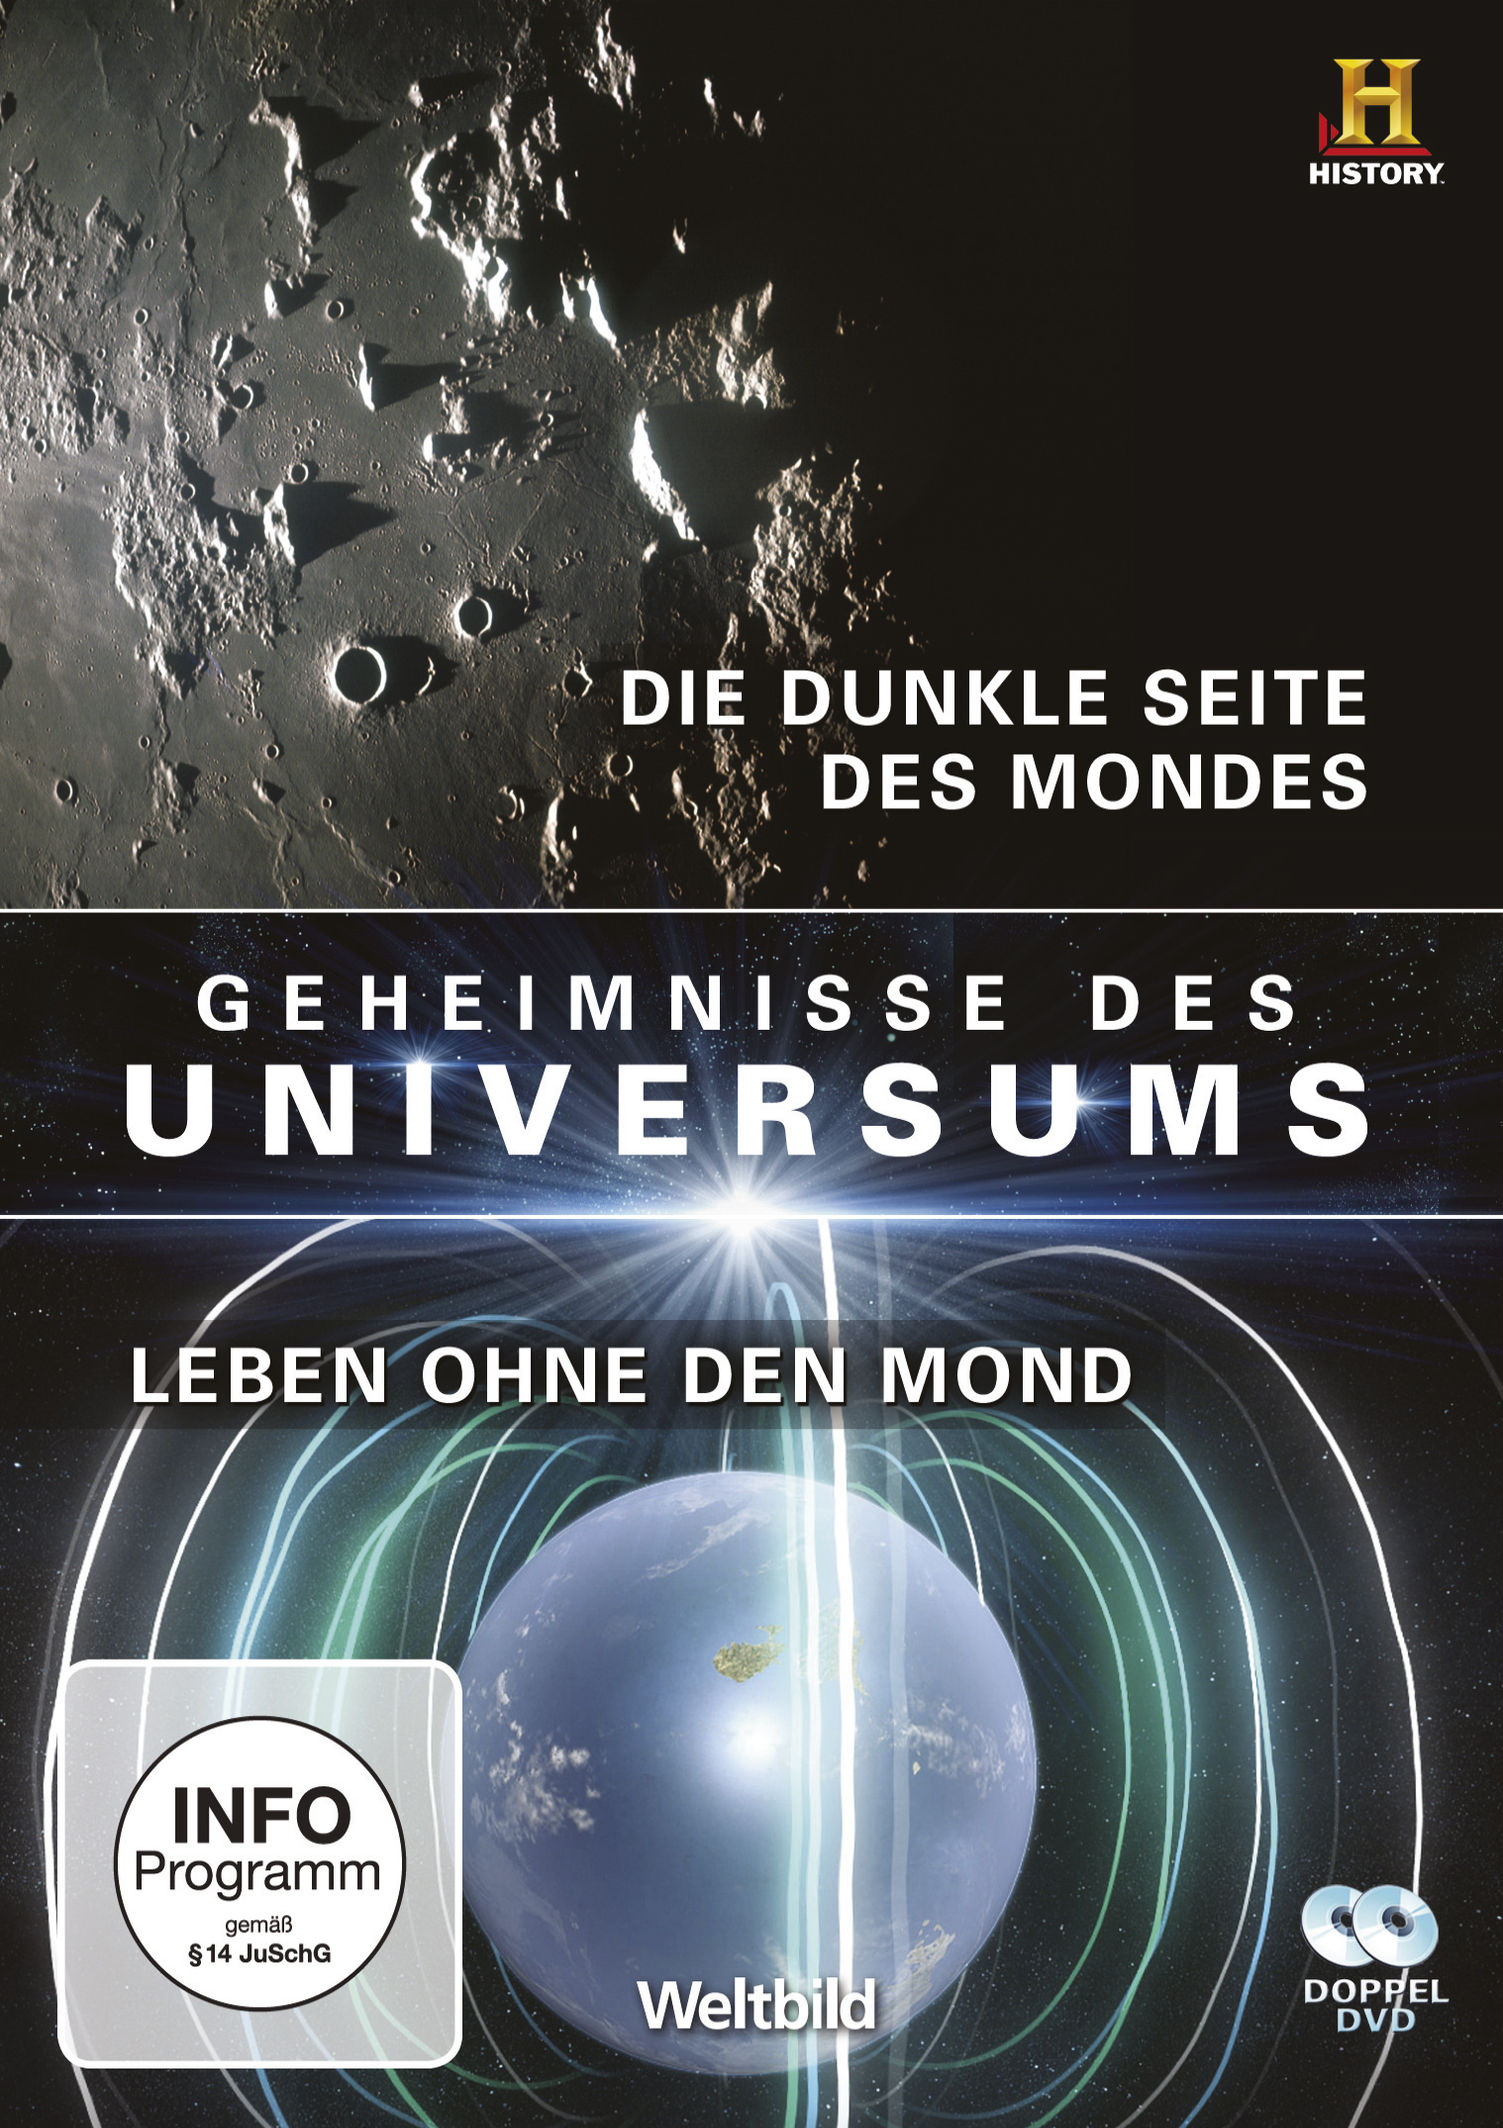 Geheimnisse des Universums - Die dunkle Seite des Mondes Leben ohne den  Mond Film | Weltbild.ch